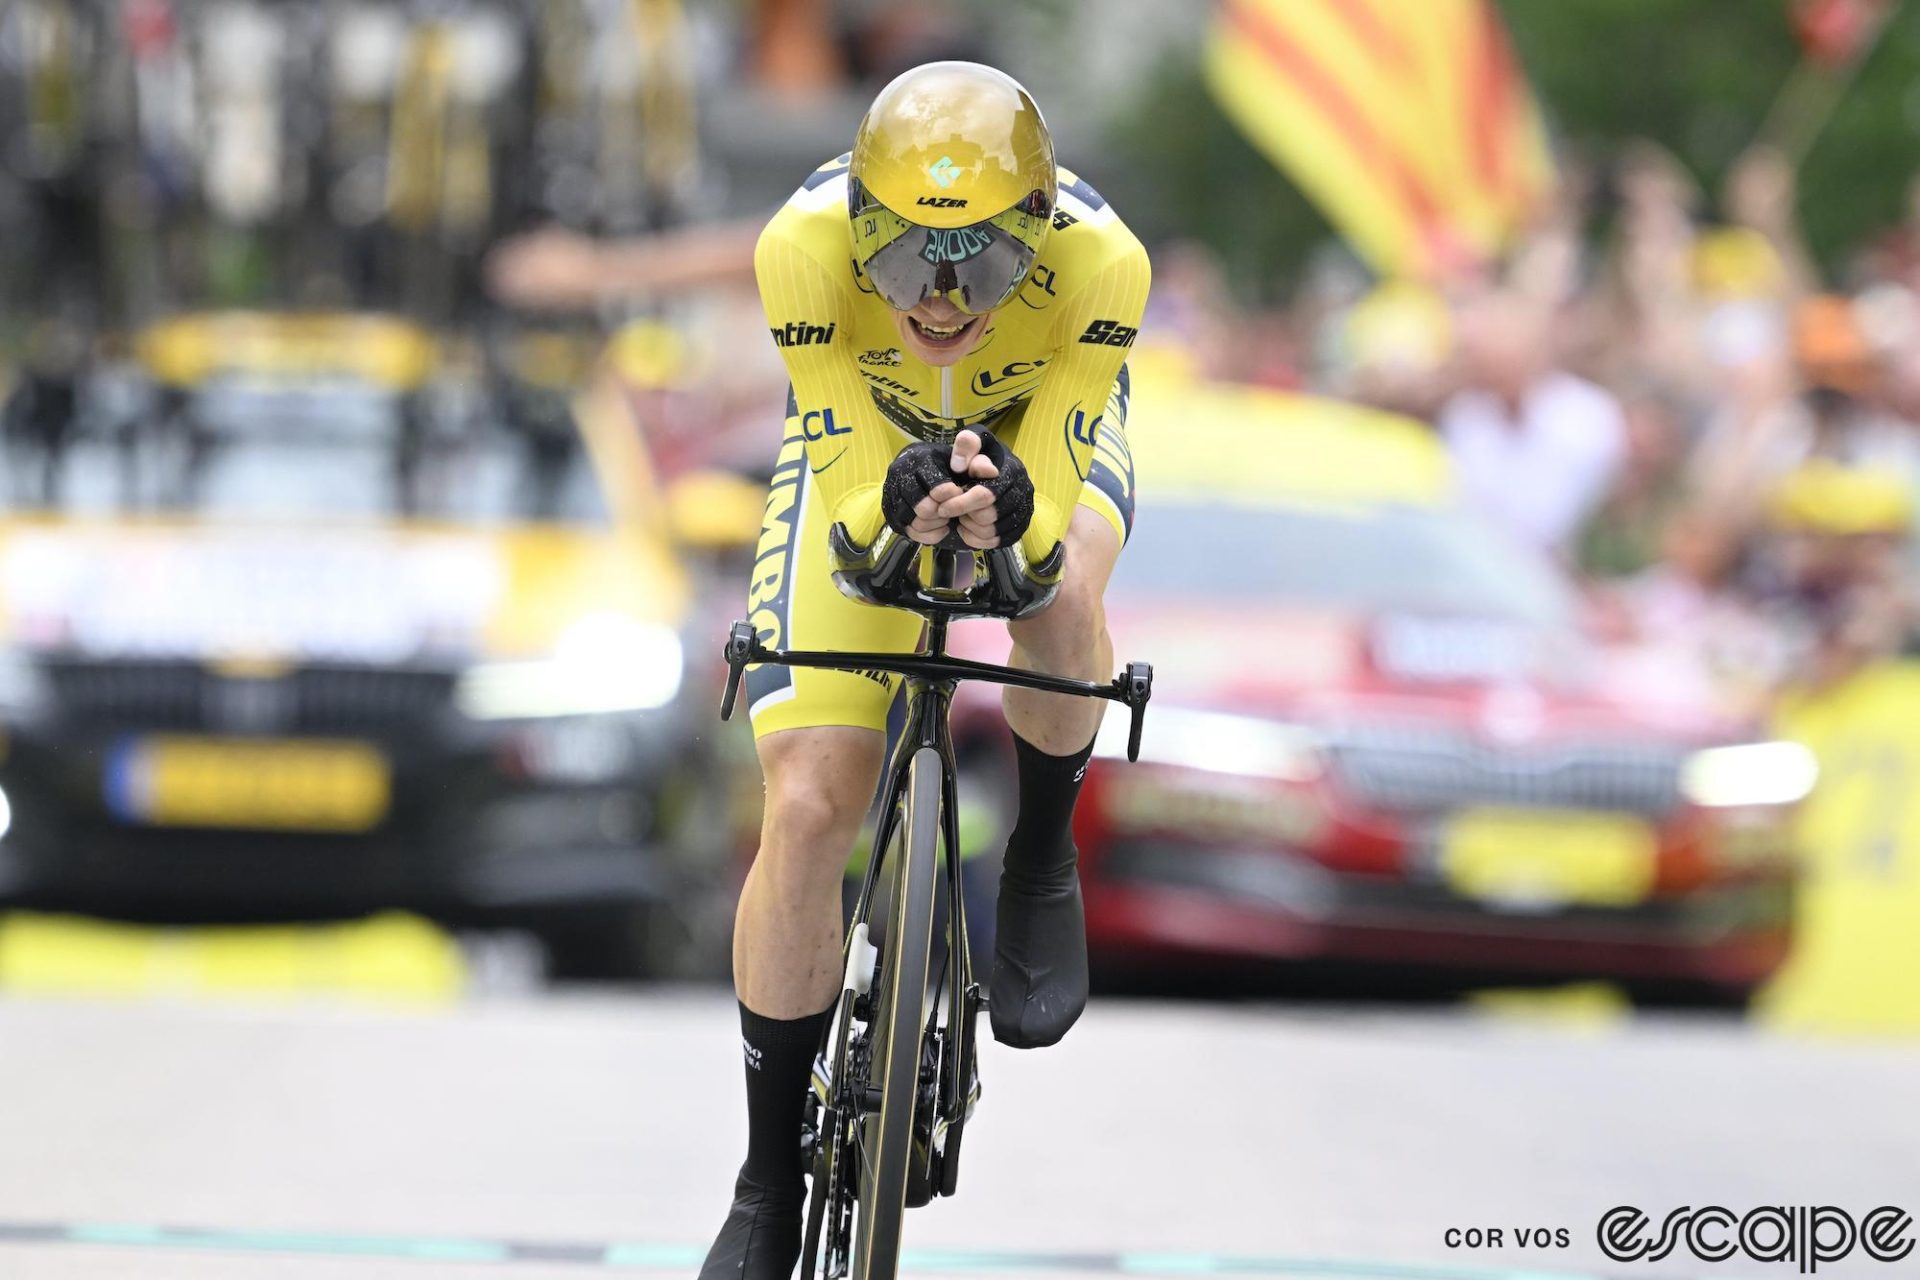 Tour de France stage 16 report: Vingegaard dominates TT - Escape Collective